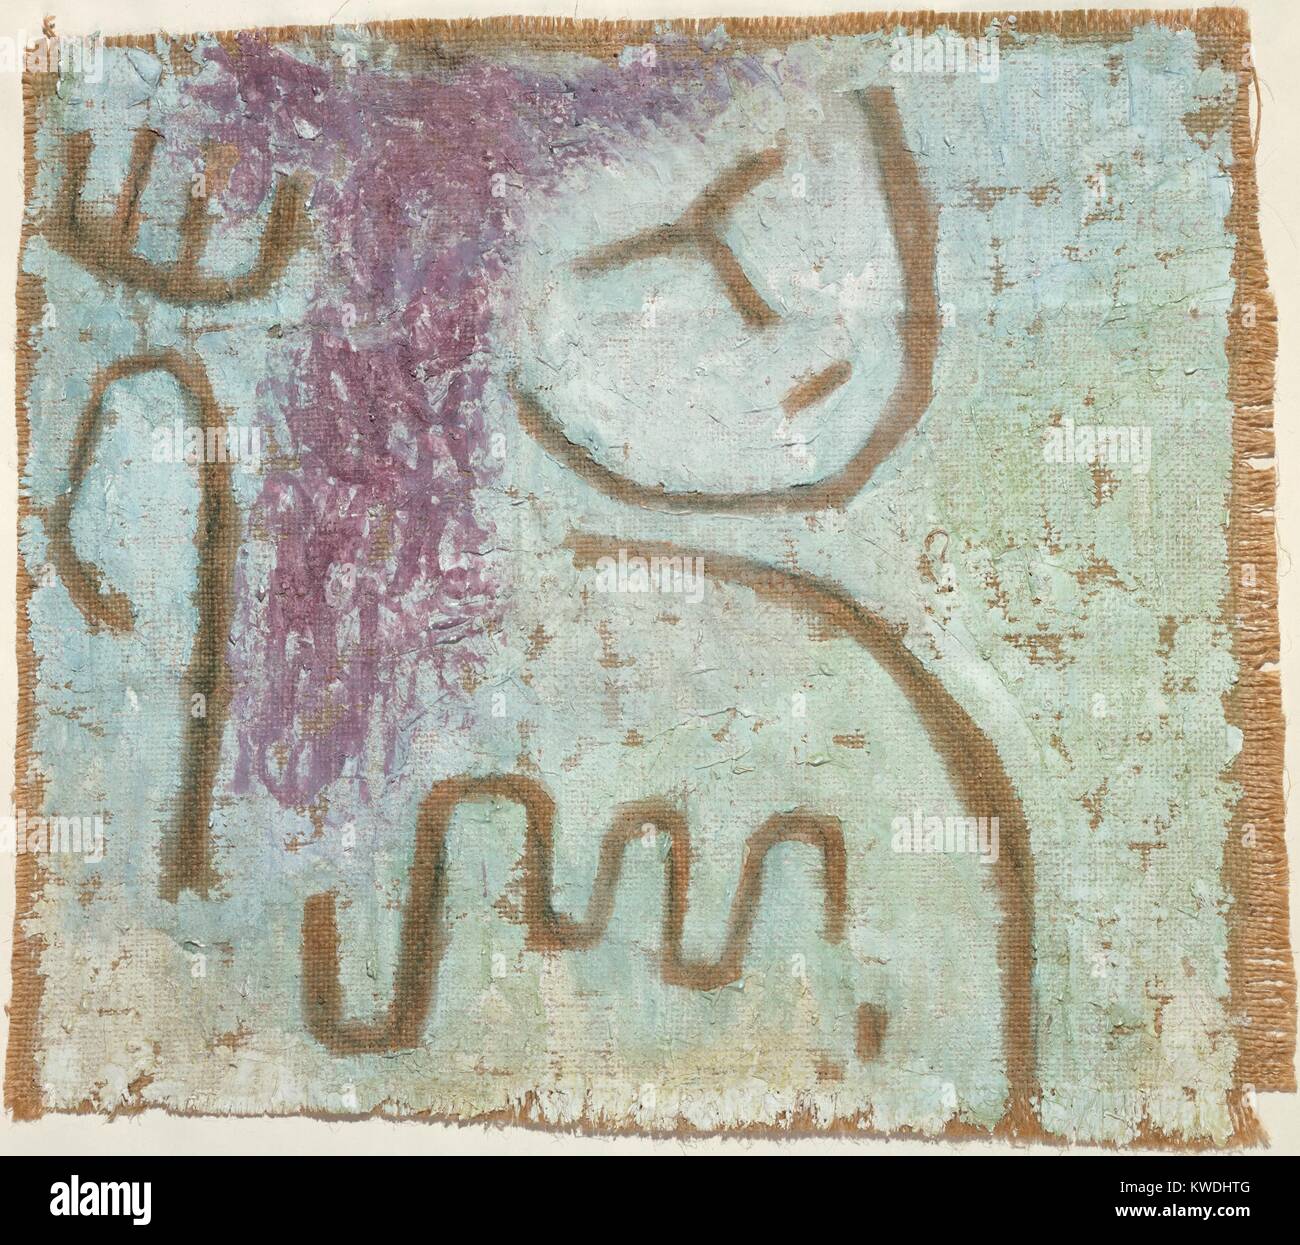 Poca speranza di Paul Klee, 1938, Swiss pittura, gesso e acquerello su tela. Verso la fine degli anni trenta, Klees lavoro diventò pessimista, riecheggiando il suo destino personale e la situazione politica. La ruvida dipinto su tela simula il deterioramento fisico (BSLOC 2017 7 30) Foto Stock